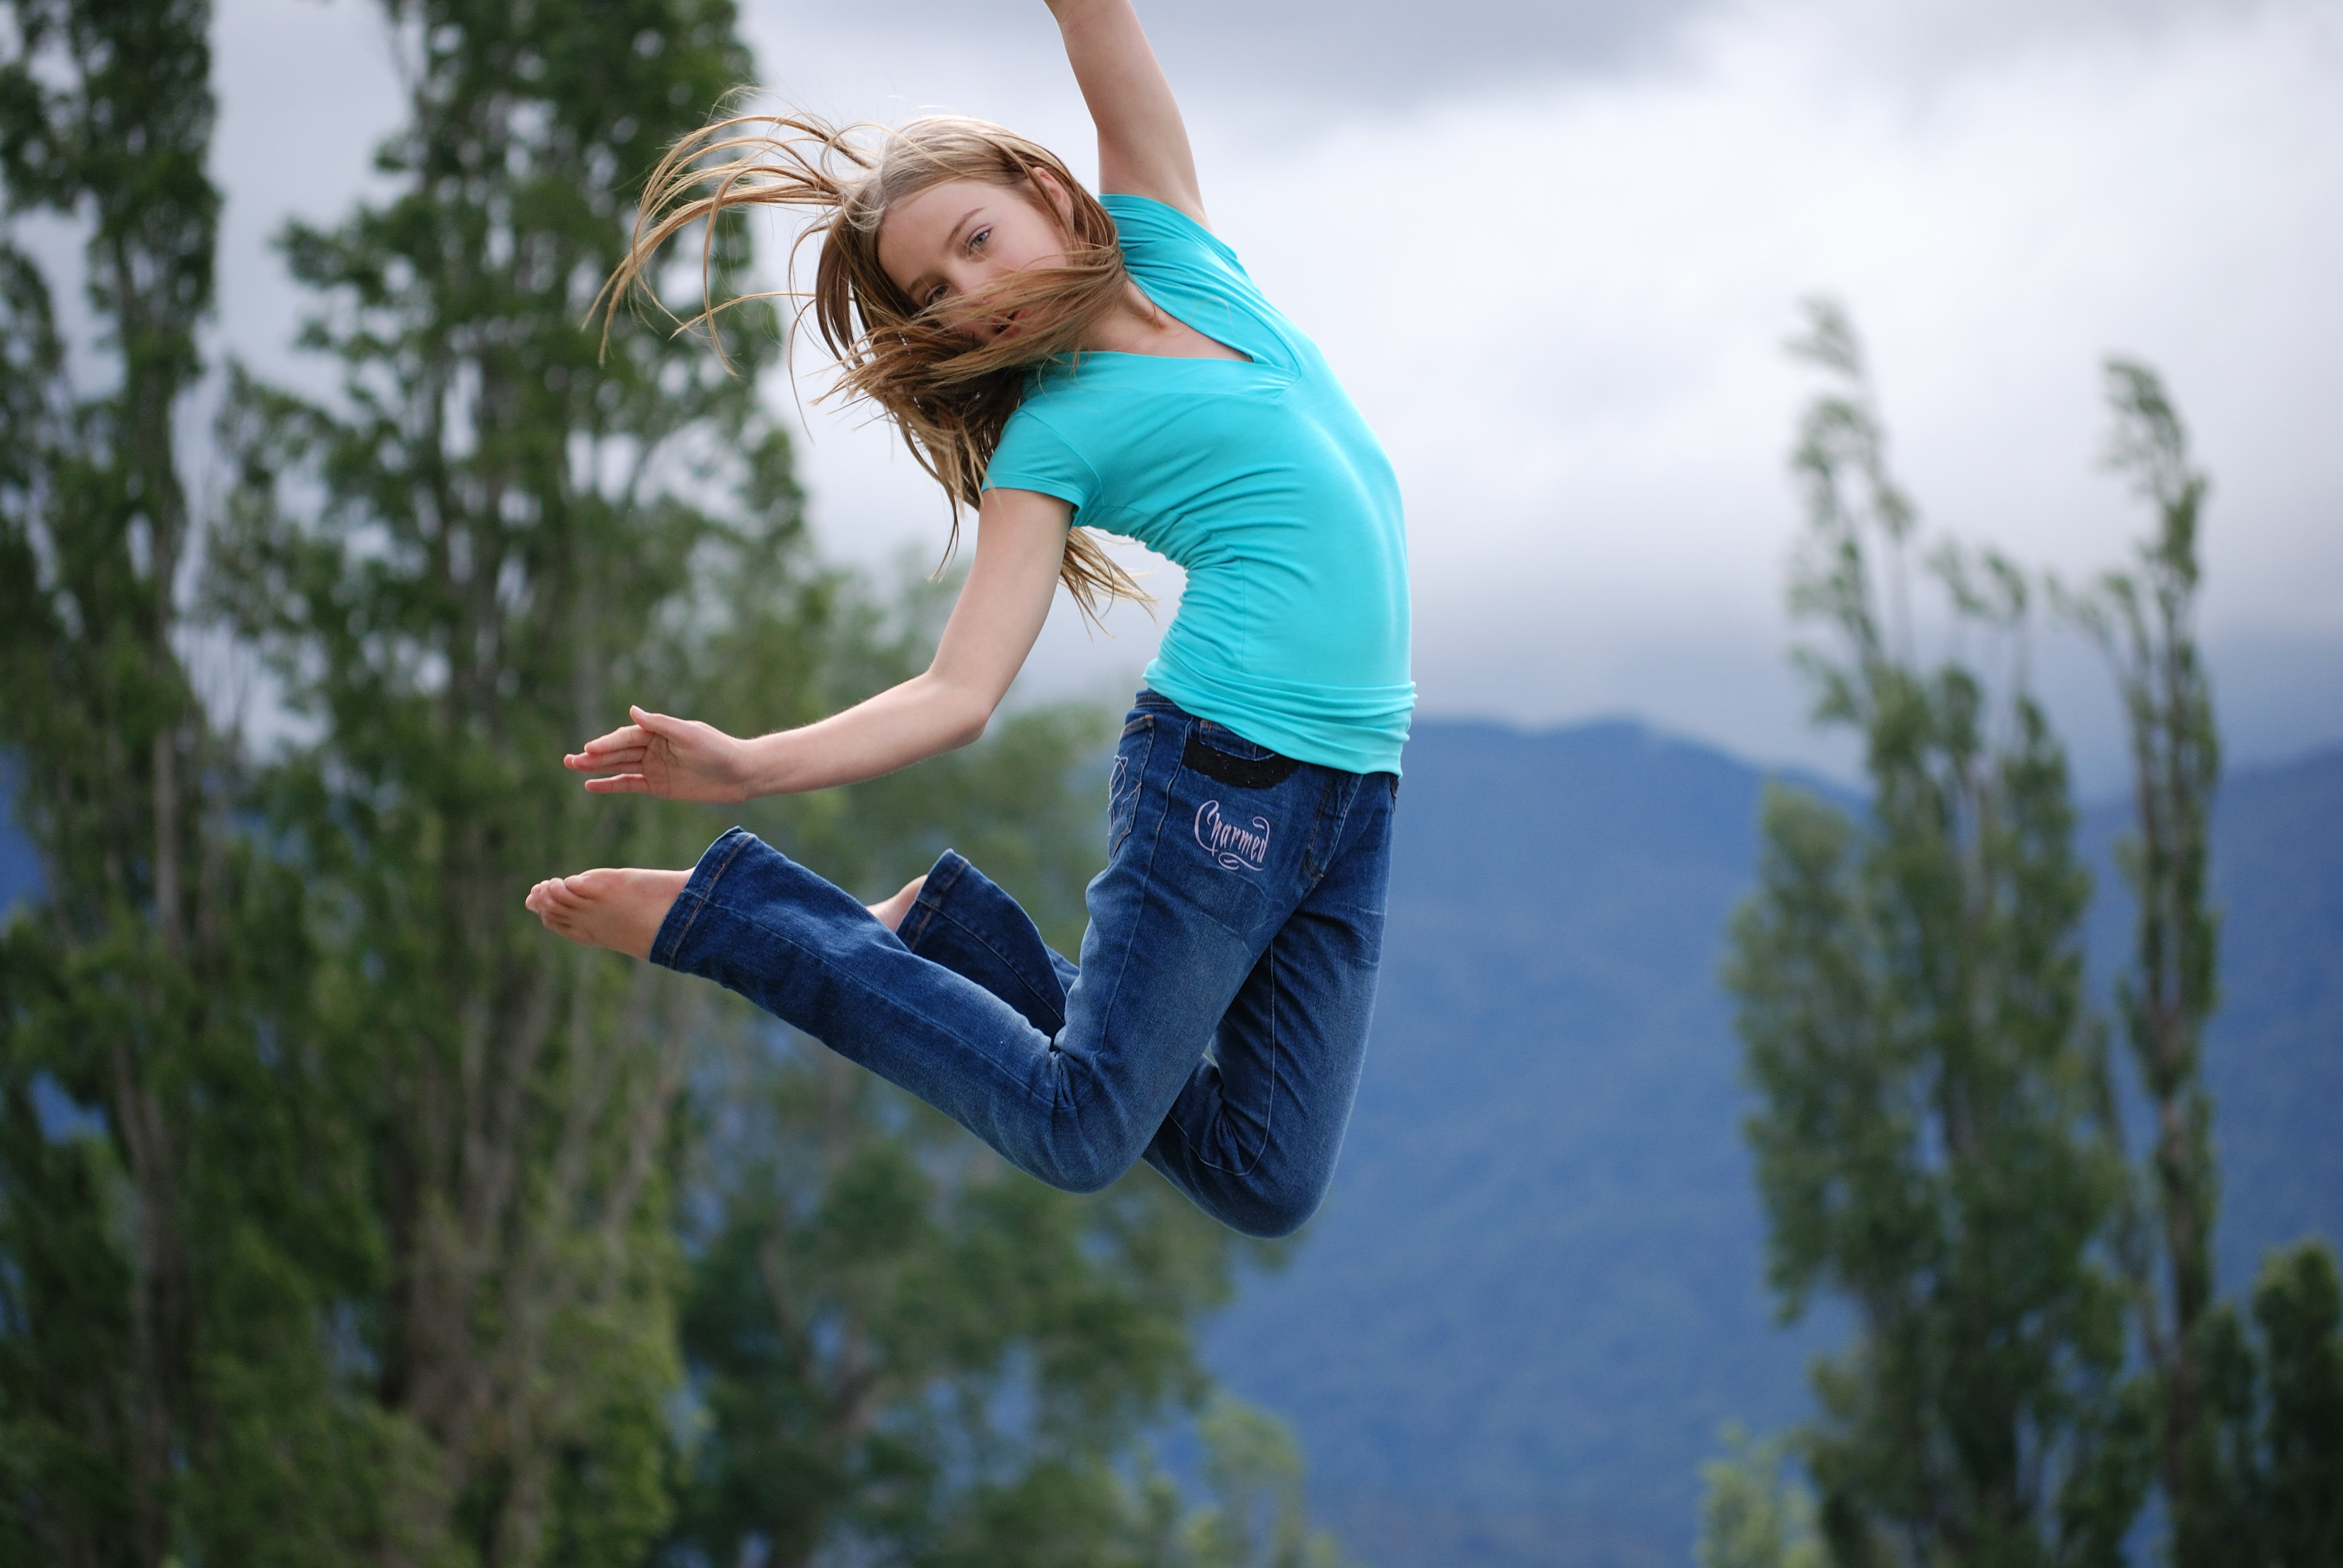 Фото по картинке. Девушка в прыжке. Девушка прыгает. Девушка прыгает в воздухе. Фотосессия в воздухе.